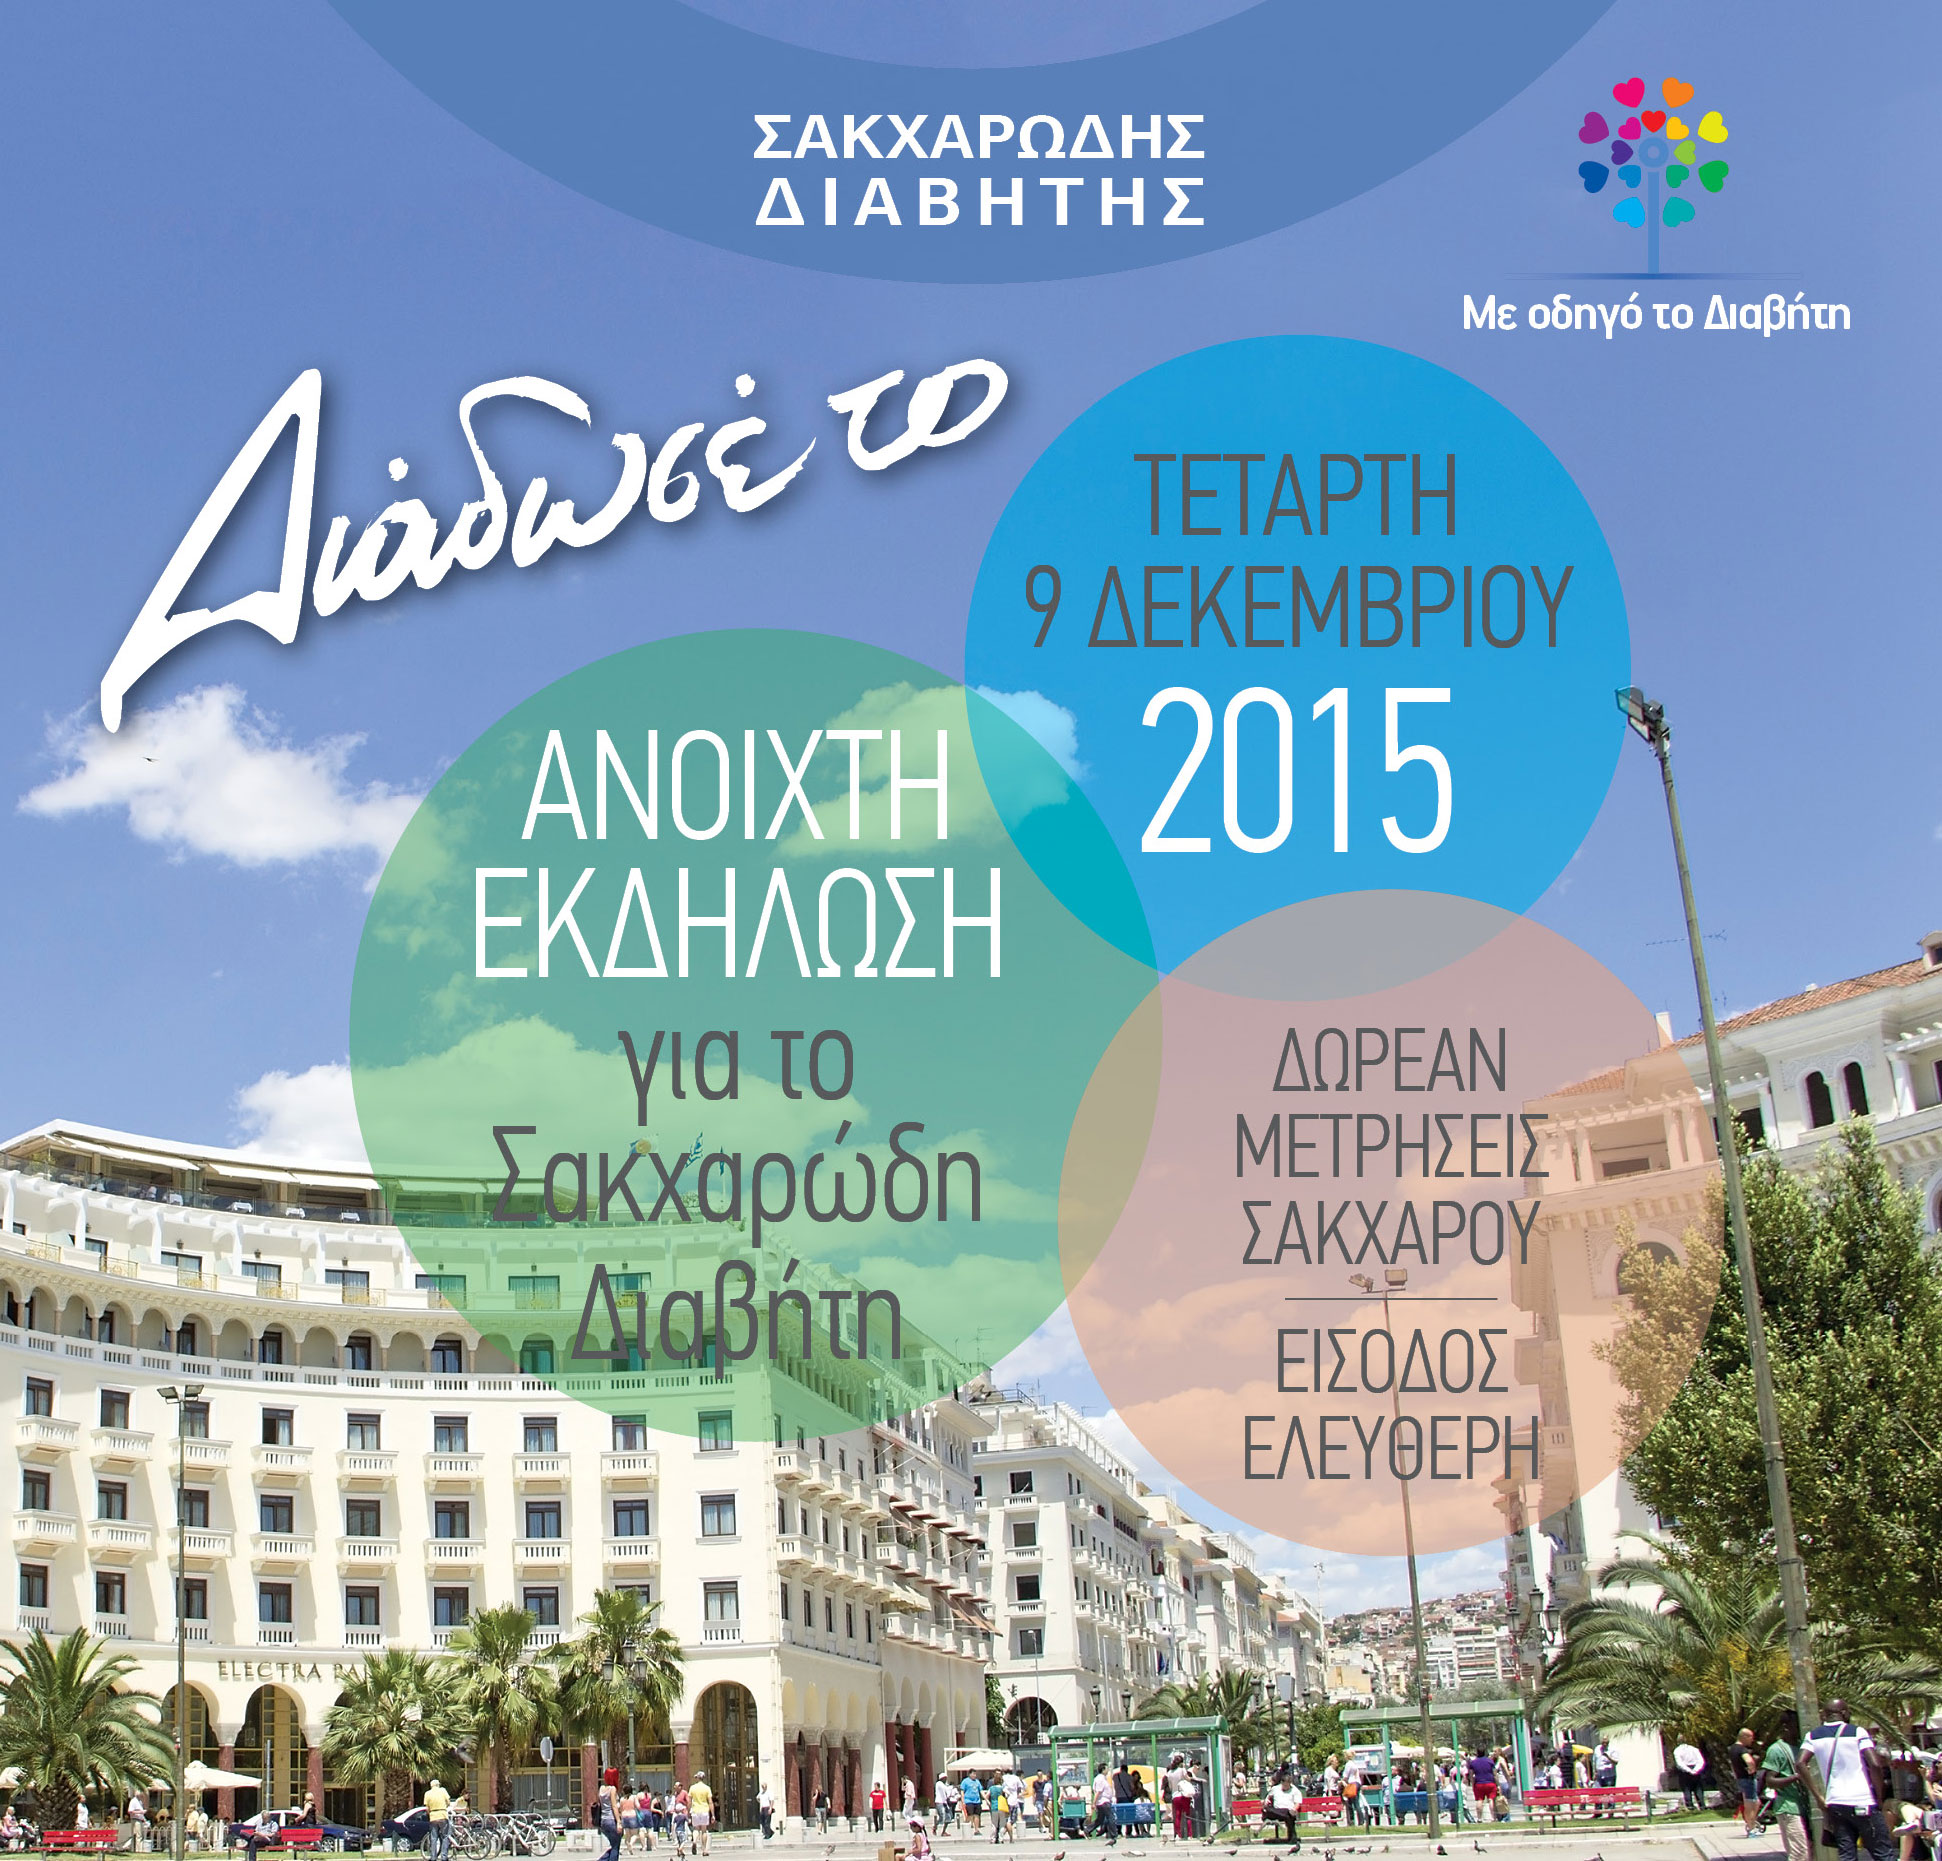 Δωρεάν μετρήσεις σακχάρου και ενημέρωση για τον διαβήτη στη Θεσσαλονίκη